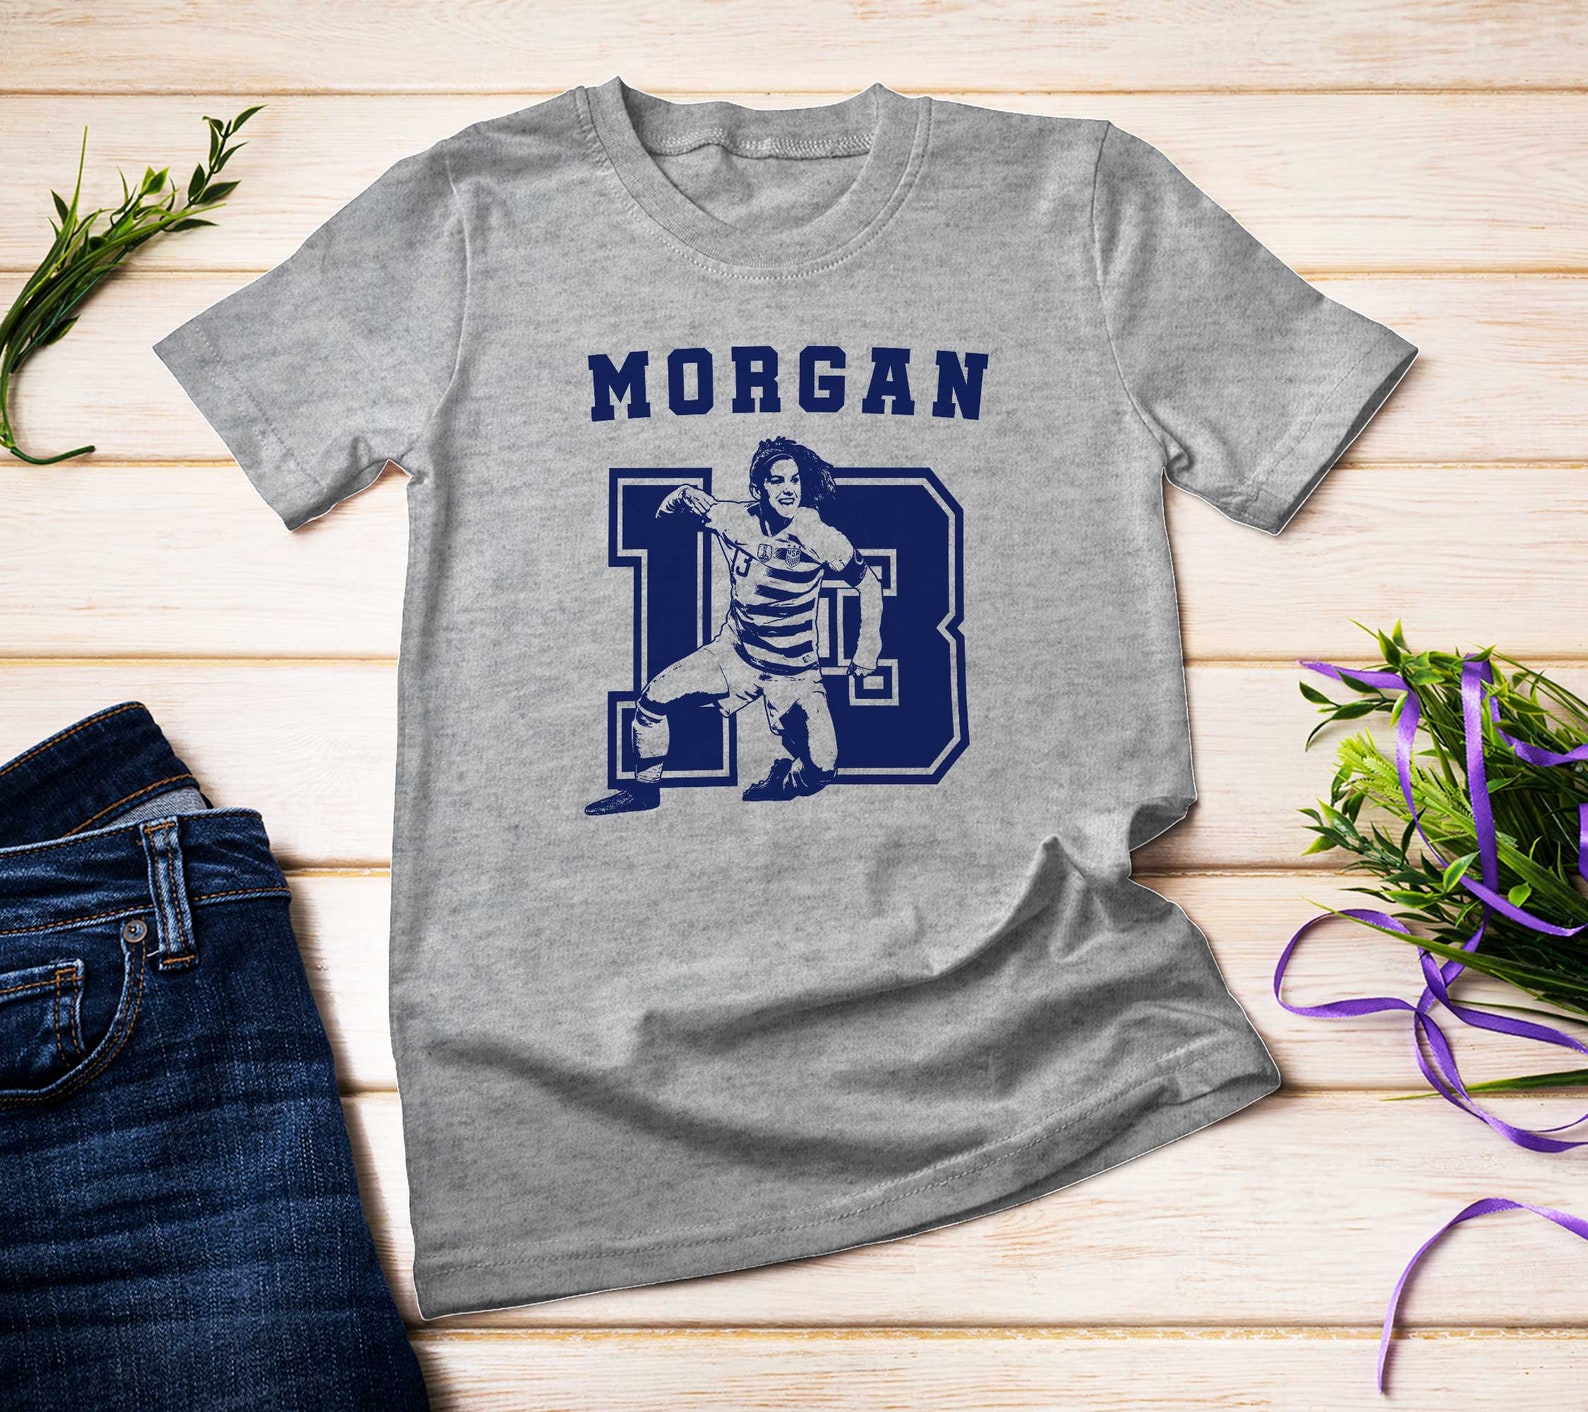 Alex morgan shirt legend number 13 tee women usa team world | Etsy